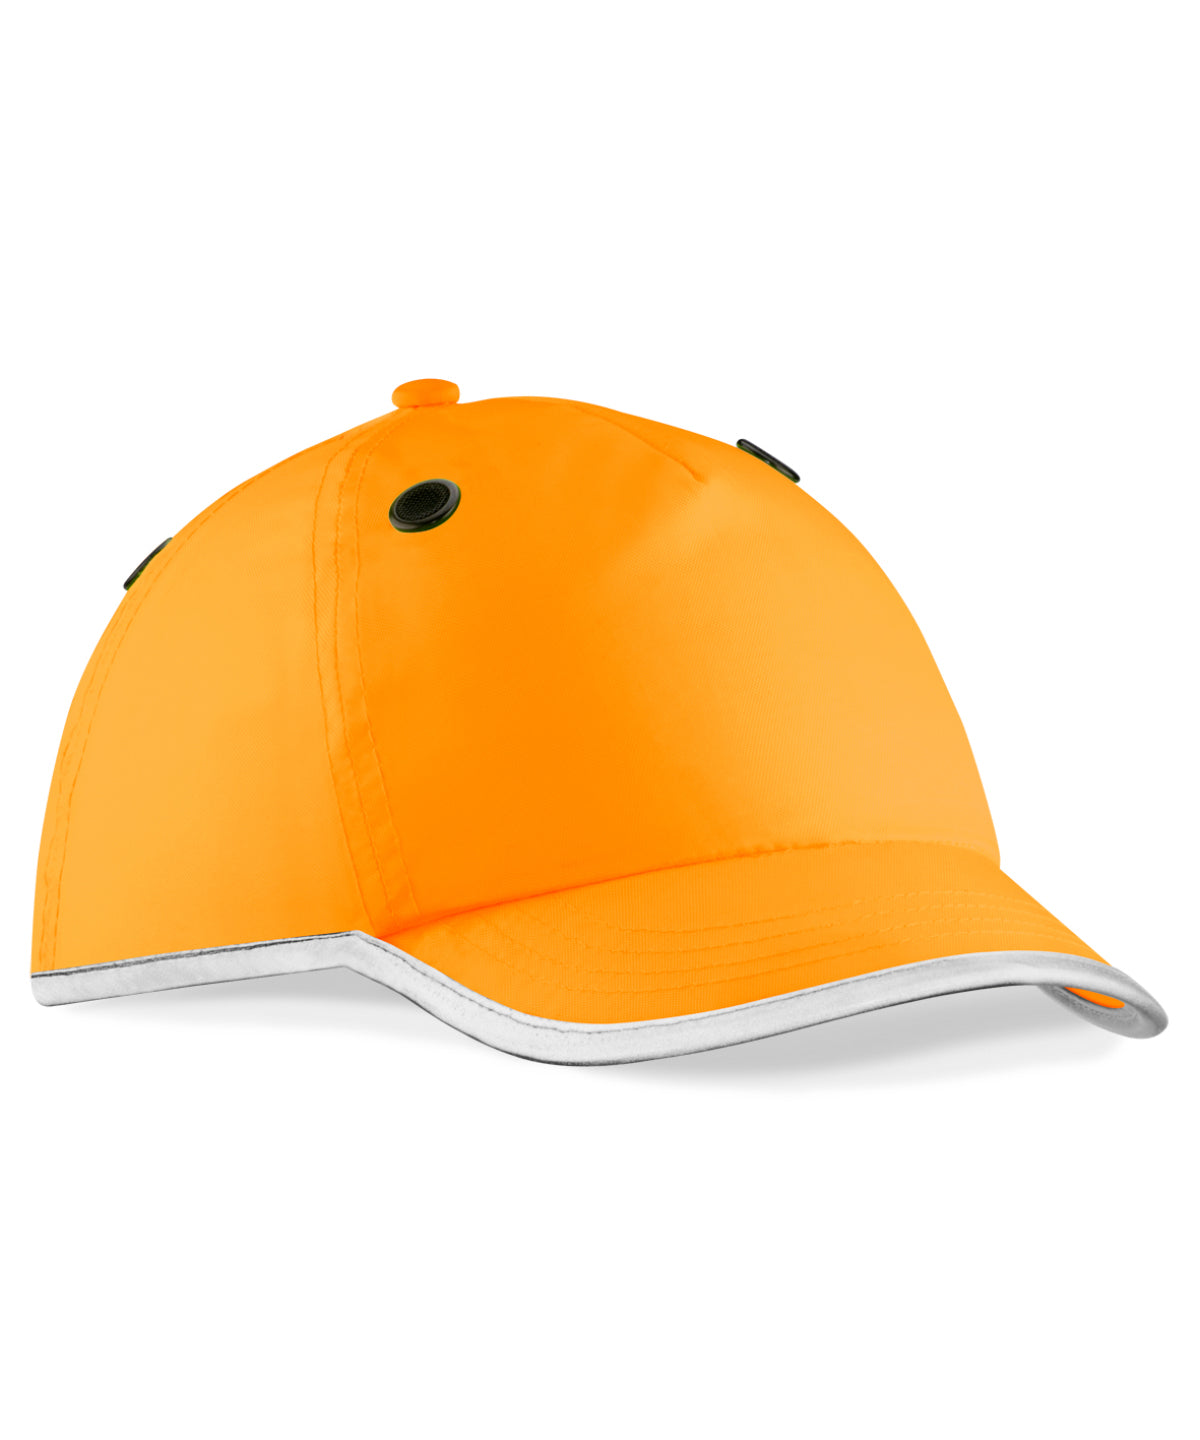 Personalised Caps - Neon Orange Beechfield Enhanced-viz EN812 bump cap